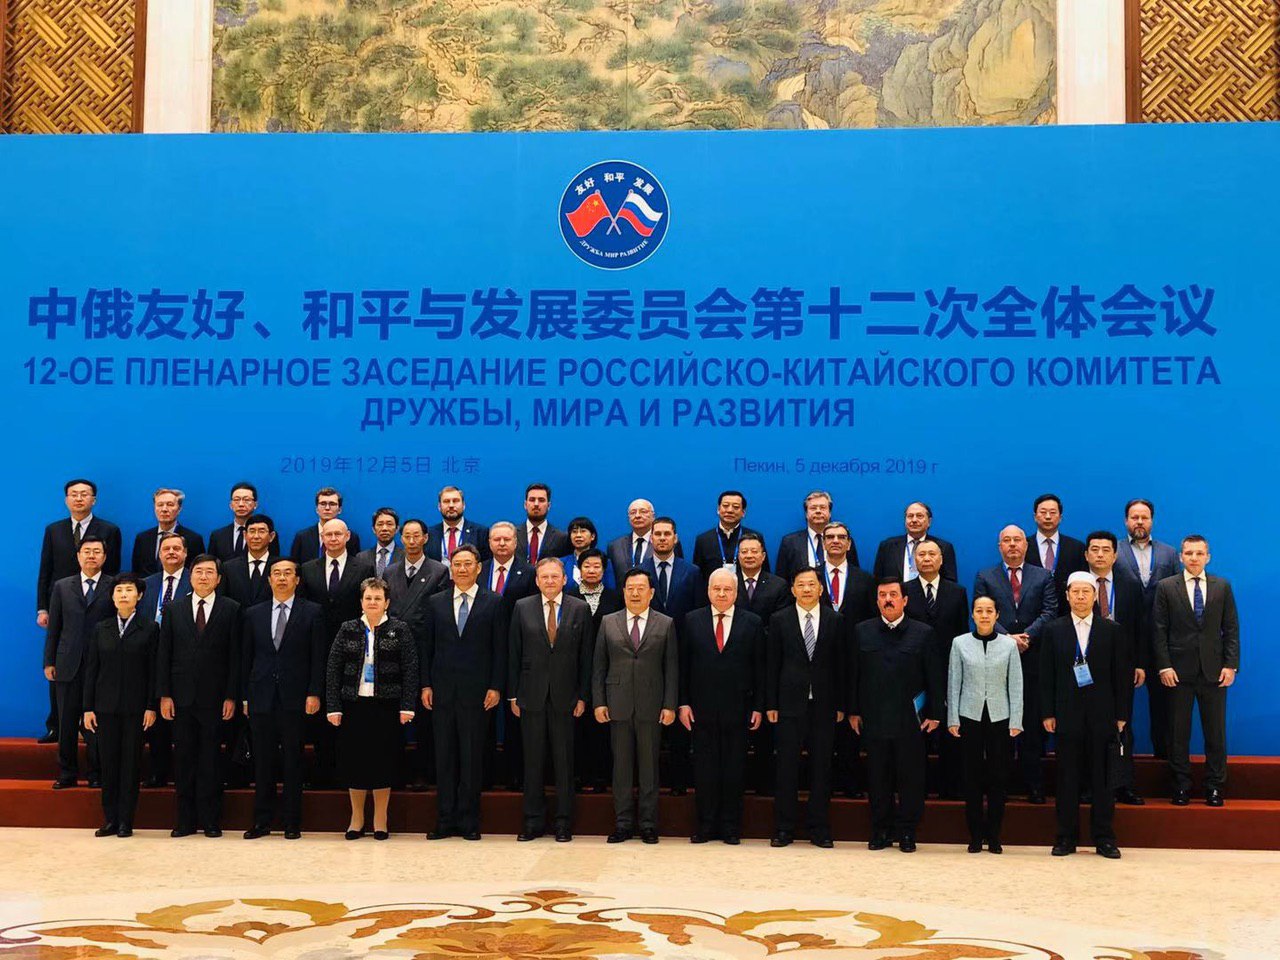 Двенадцатое пленарное заседание российско-китайского комитета дружбы, мира и развития открылось в Пекине